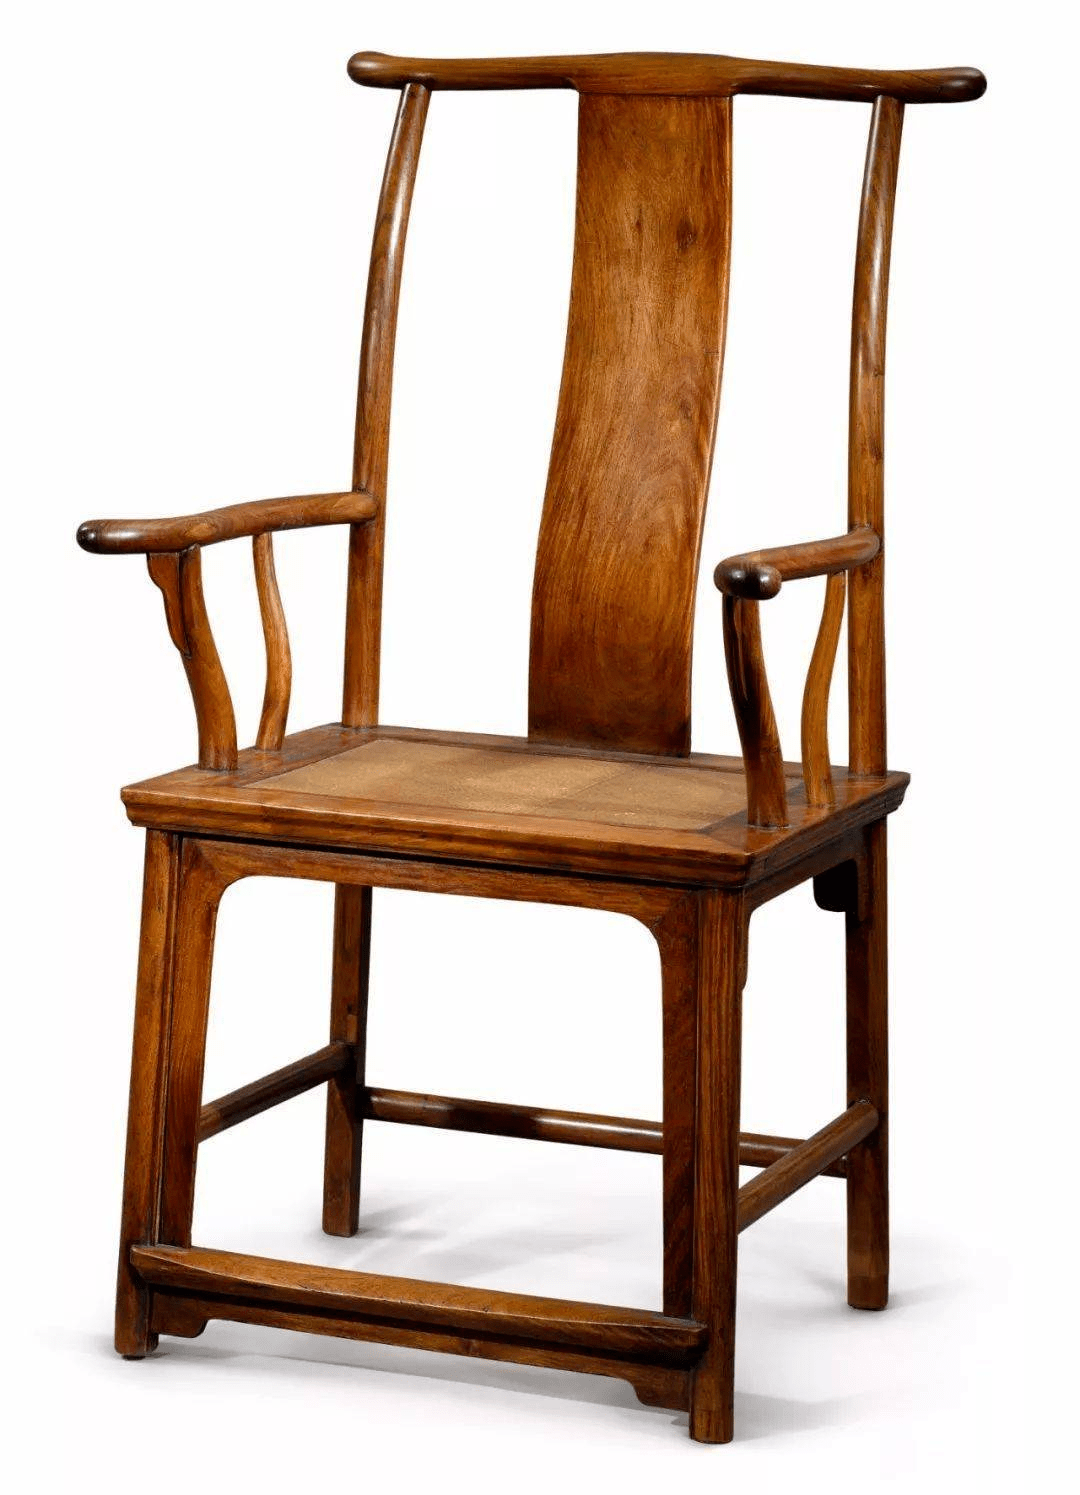 官帽椅是宋代定型的一种椅具,到明代时已发展为南官帽椅和北官帽椅(四